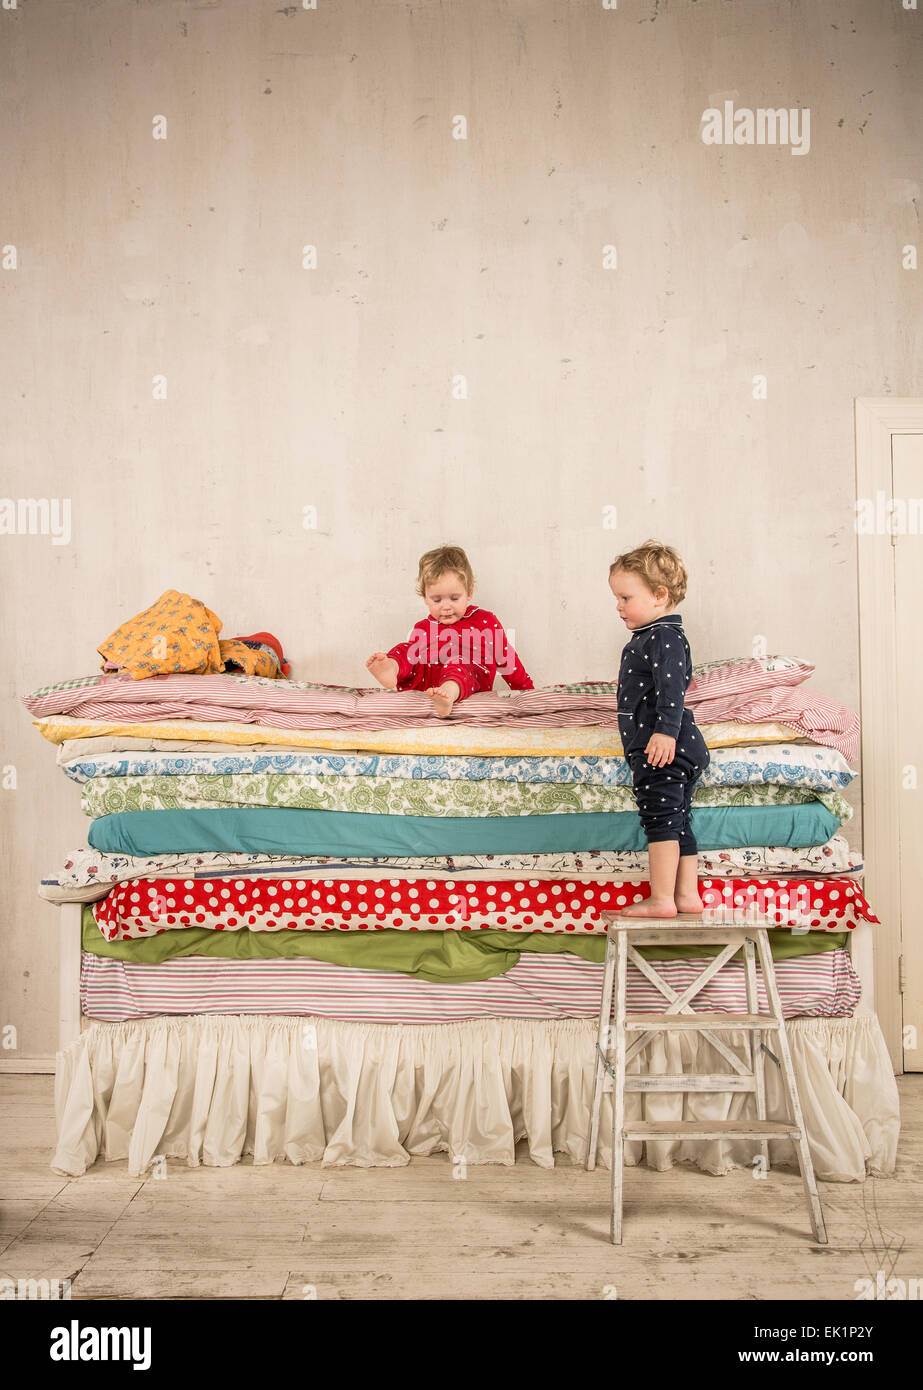 Kinder spielen am Bett - Prinzessin und die Erbse. Stockfoto